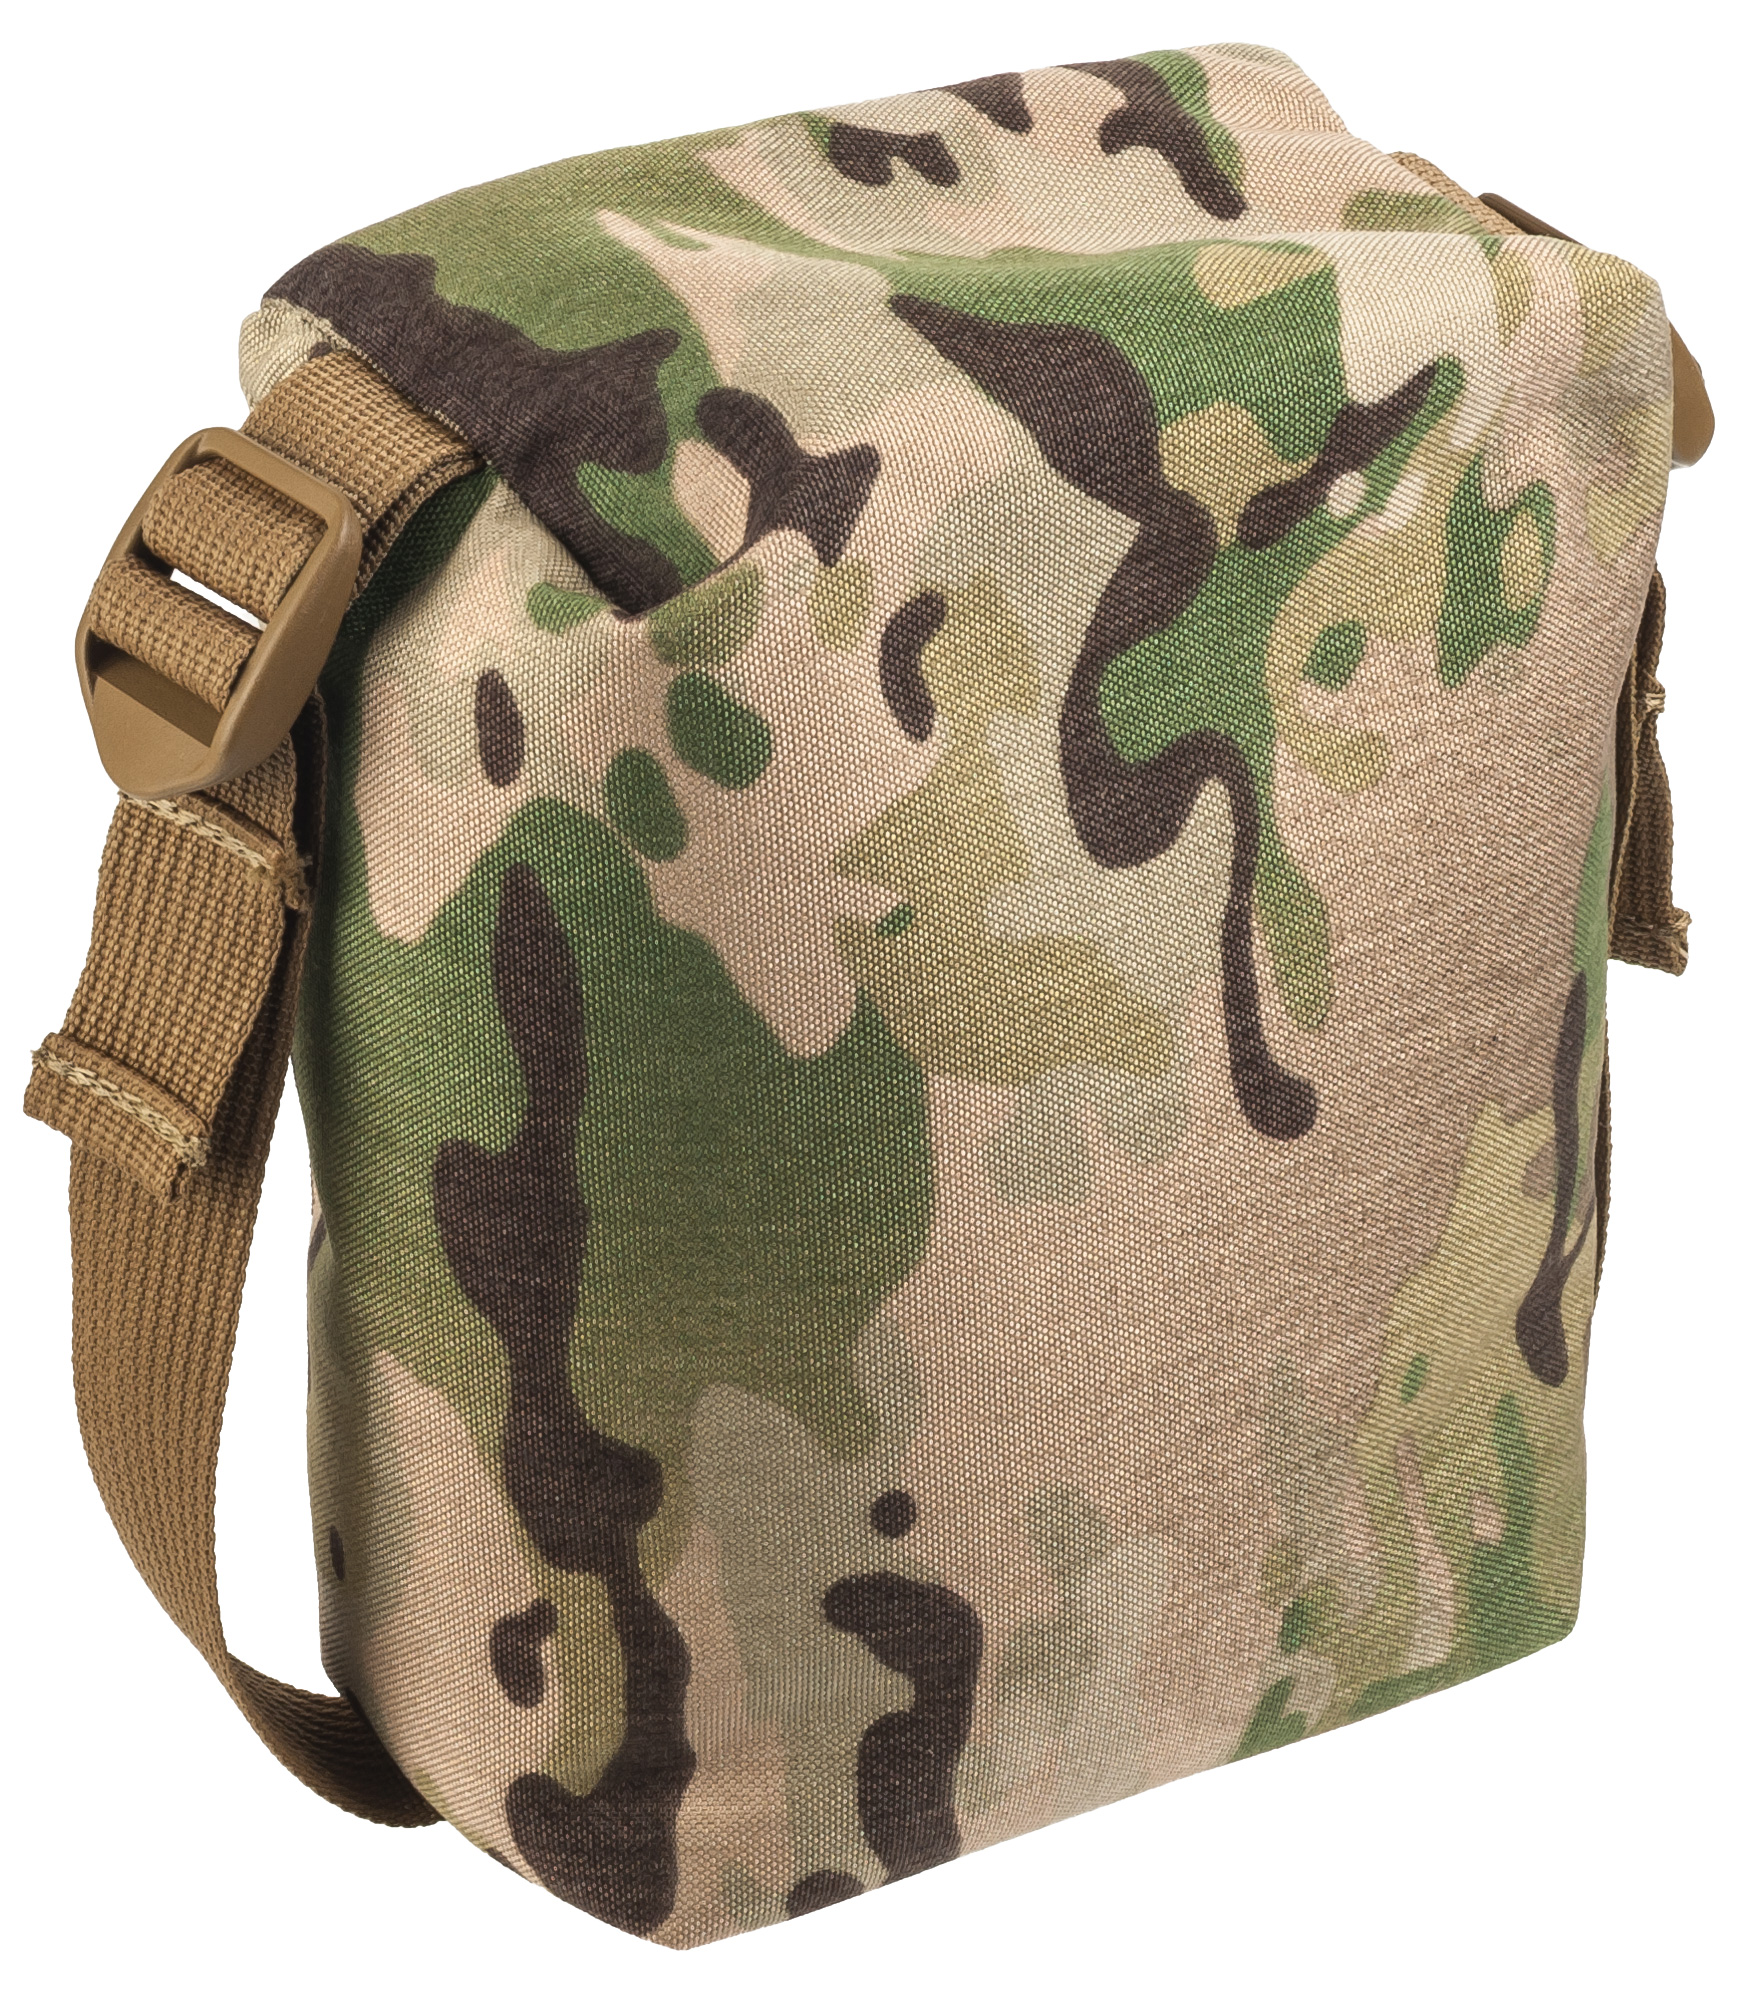 Armageddon Gear Python Adjustable Support Bag